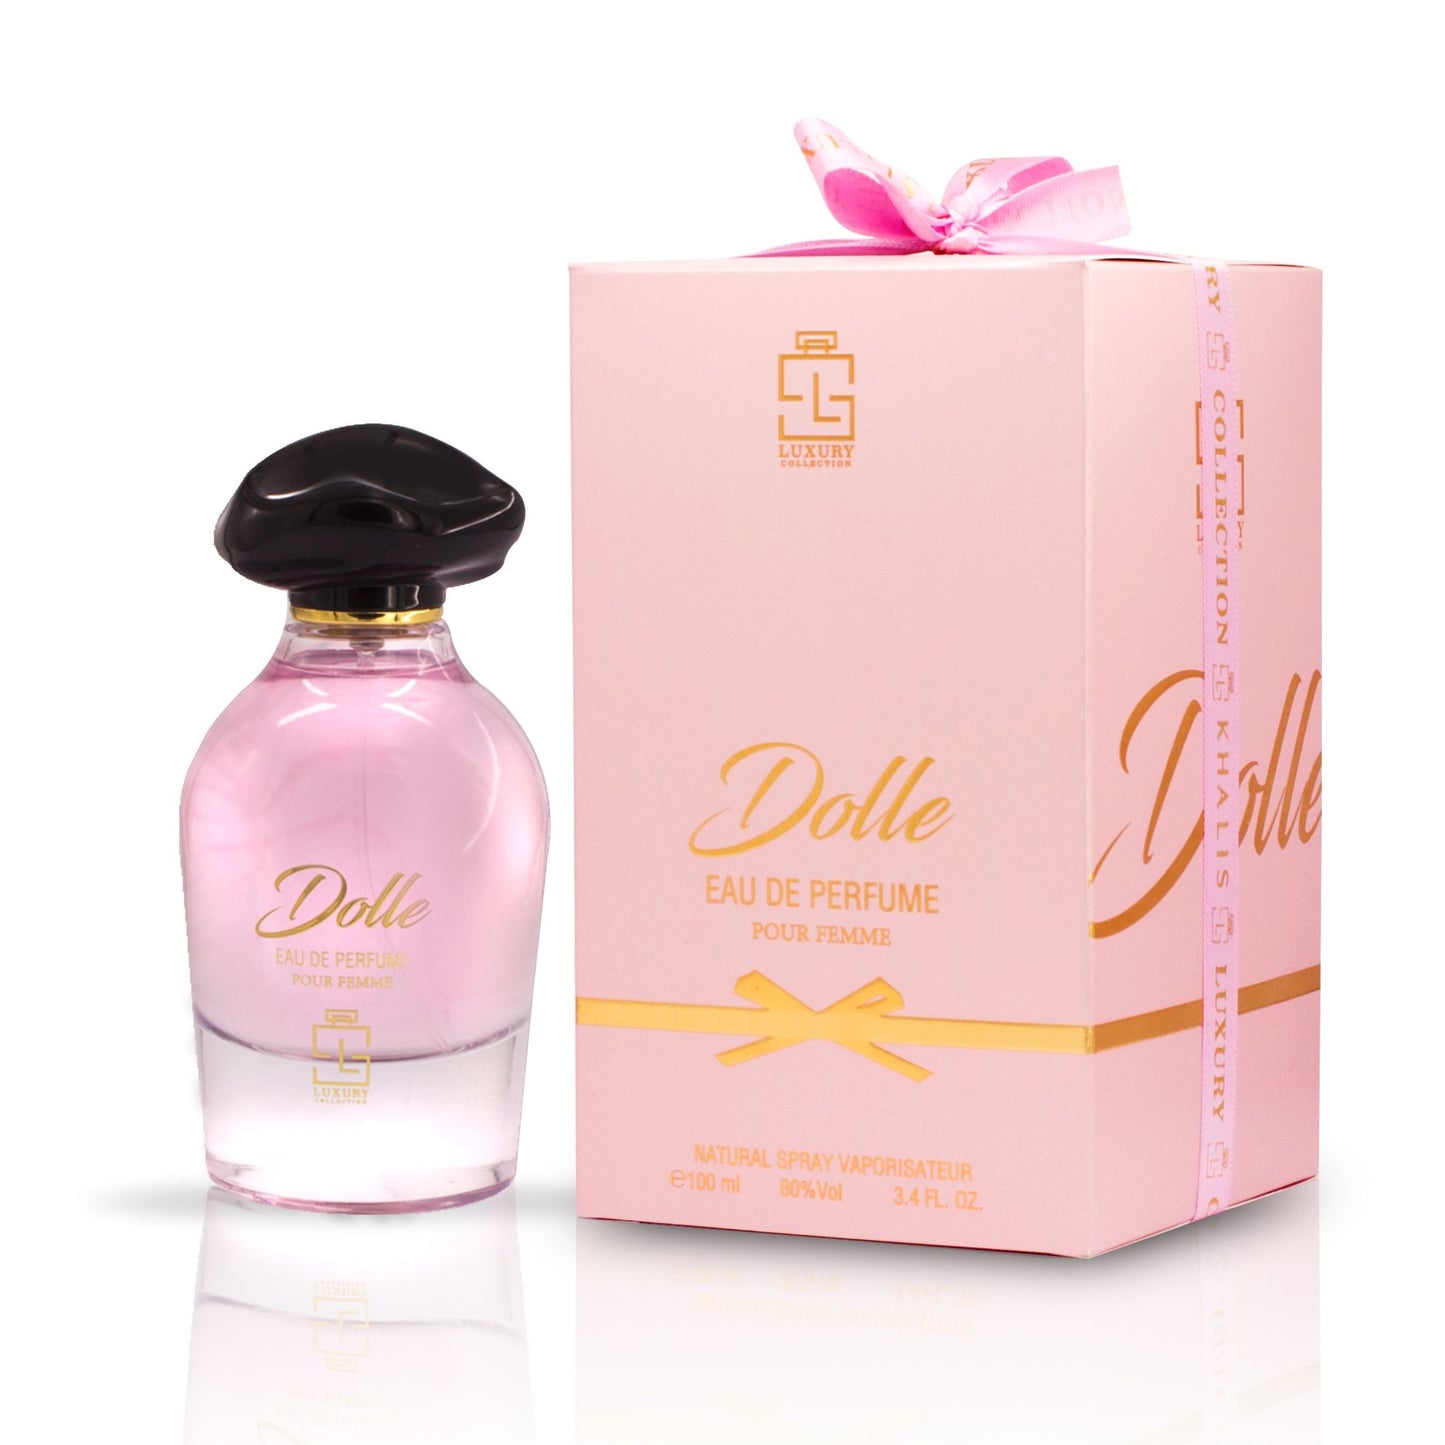 100 ml Eau de Perfume DOLLE cu Arome Florale și Mosc pentru Femei